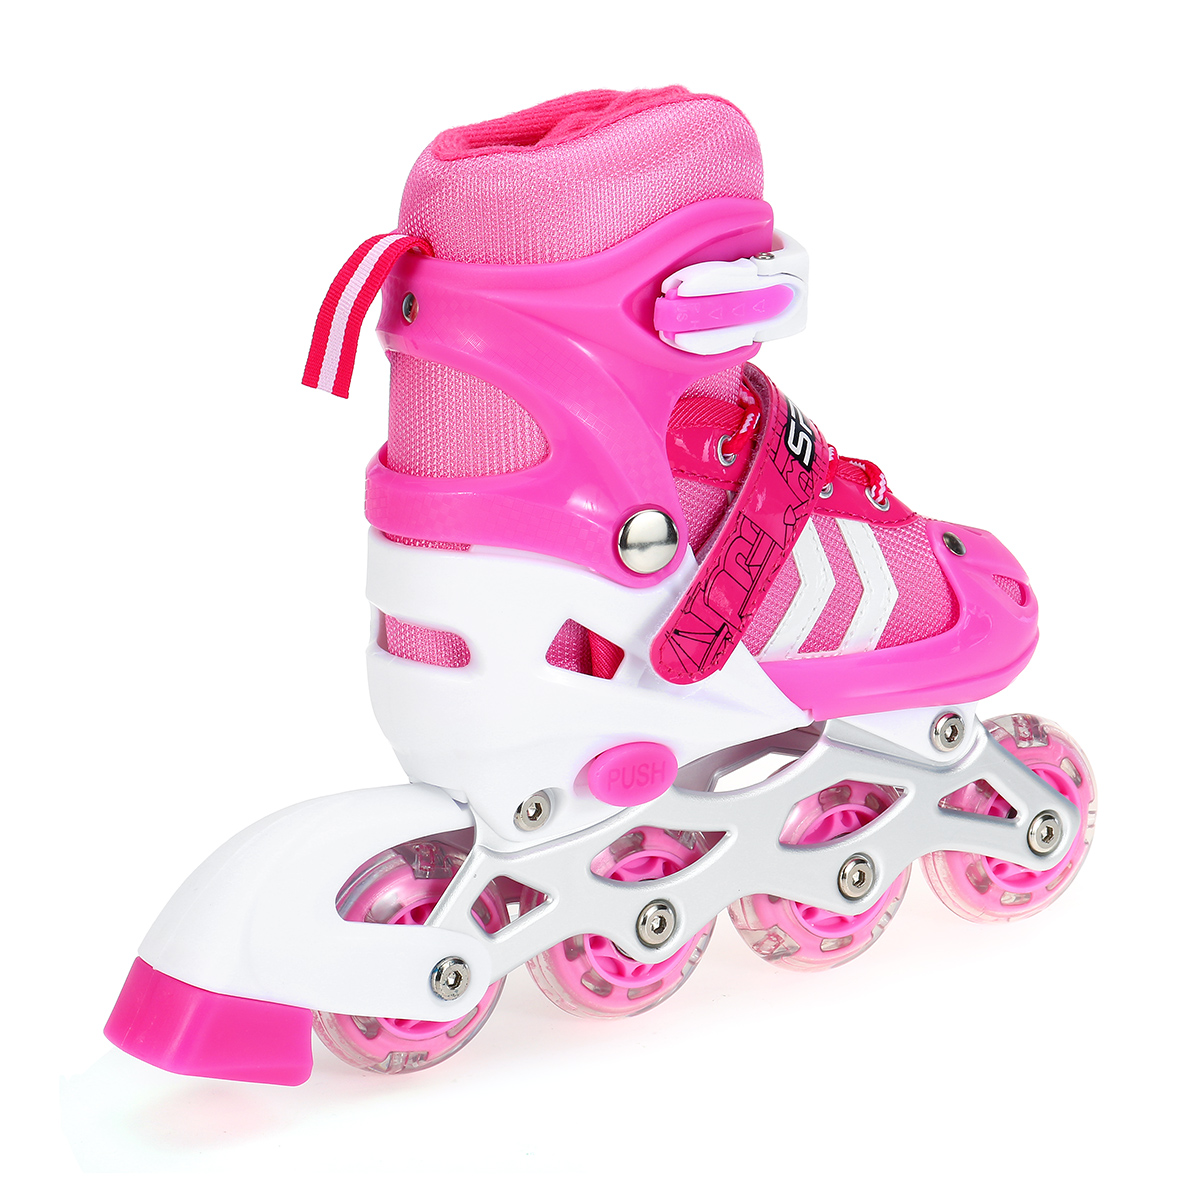 SML-Inline-Skates-with-4-LED-PVC-Skate-Wheels--Entry-level-Kid-Women-Men-Roller-Skates-Birthday-Gift-1808954-16